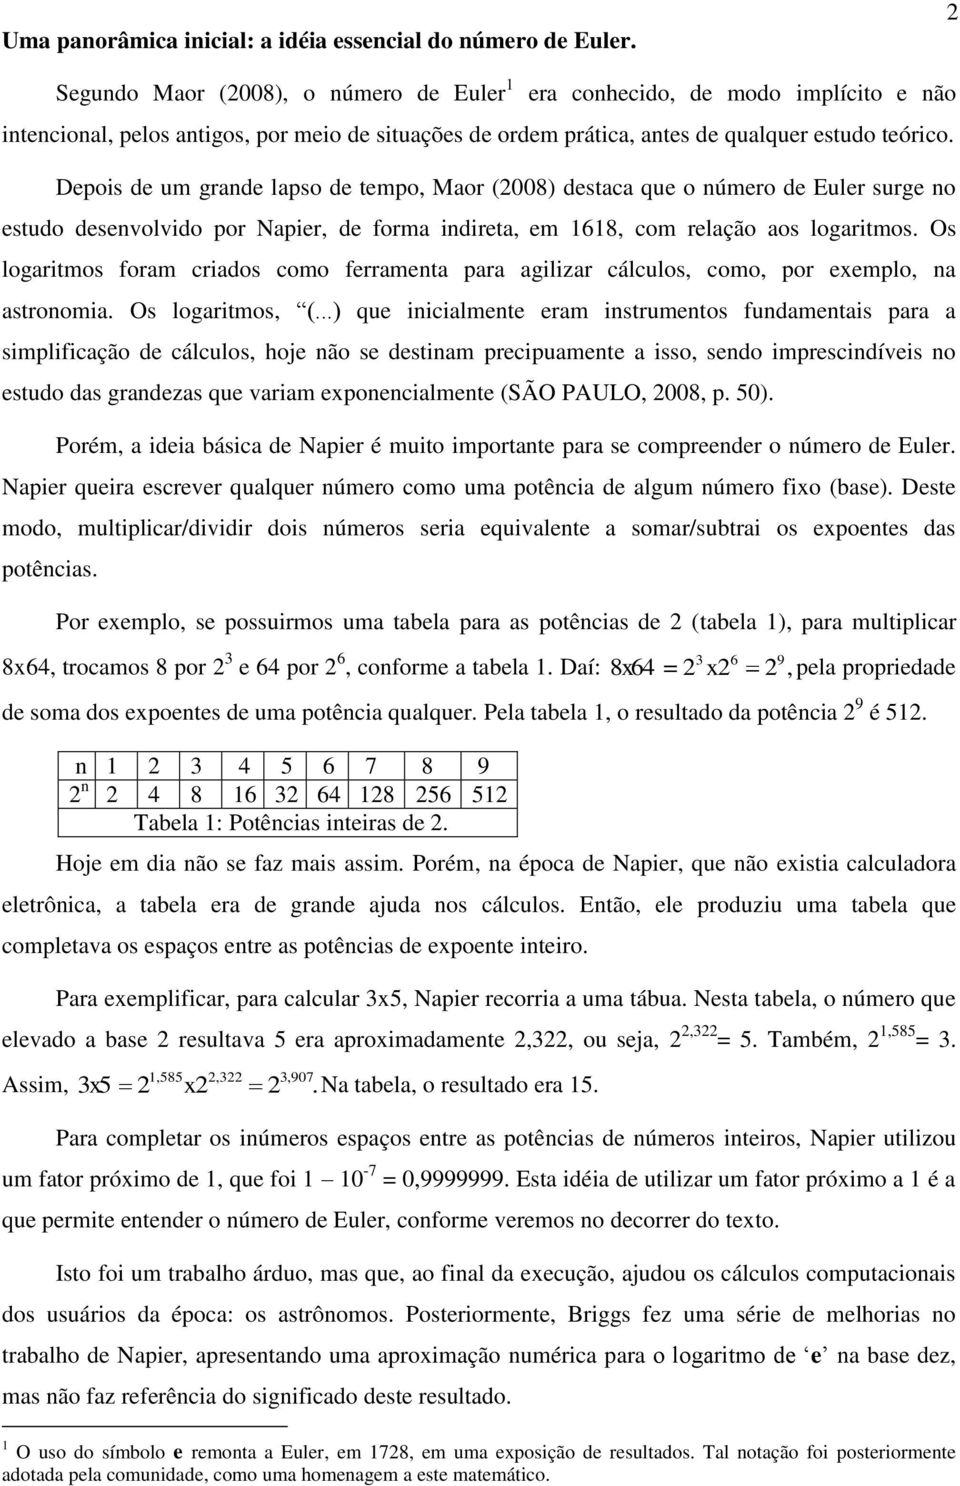 Depois de um grade lapso de tempo, Maor (008) destaca que o úmero de Euler surge o estudo desevolvido por Napier, de forma idireta, em 68, com relação aos logaritmos.